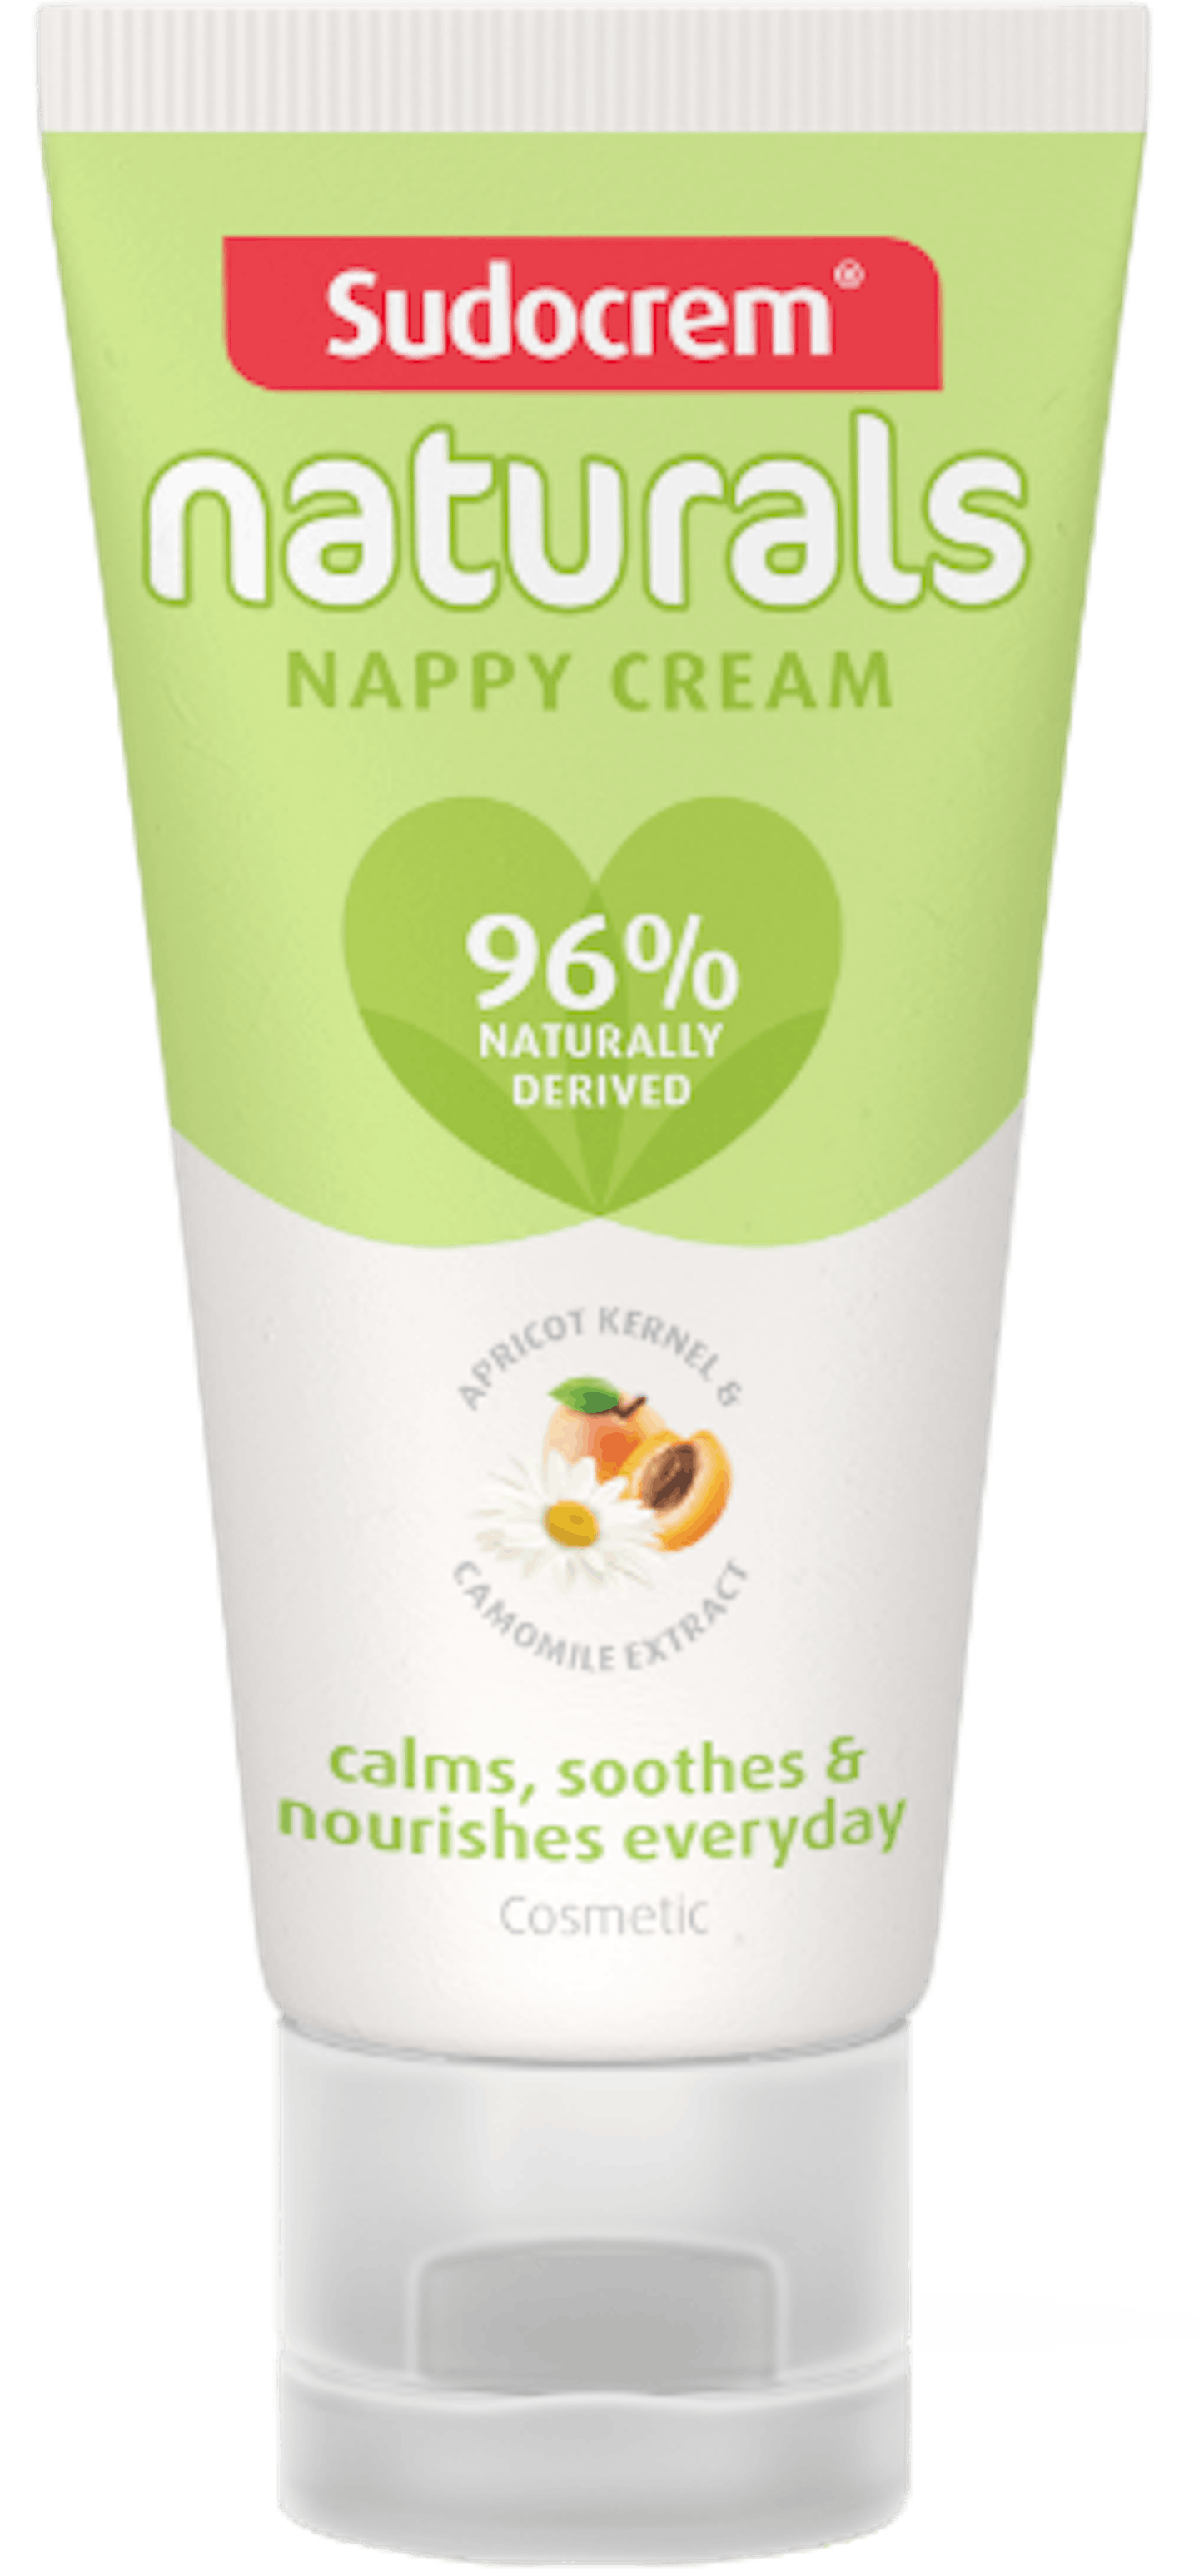 Nappy cream